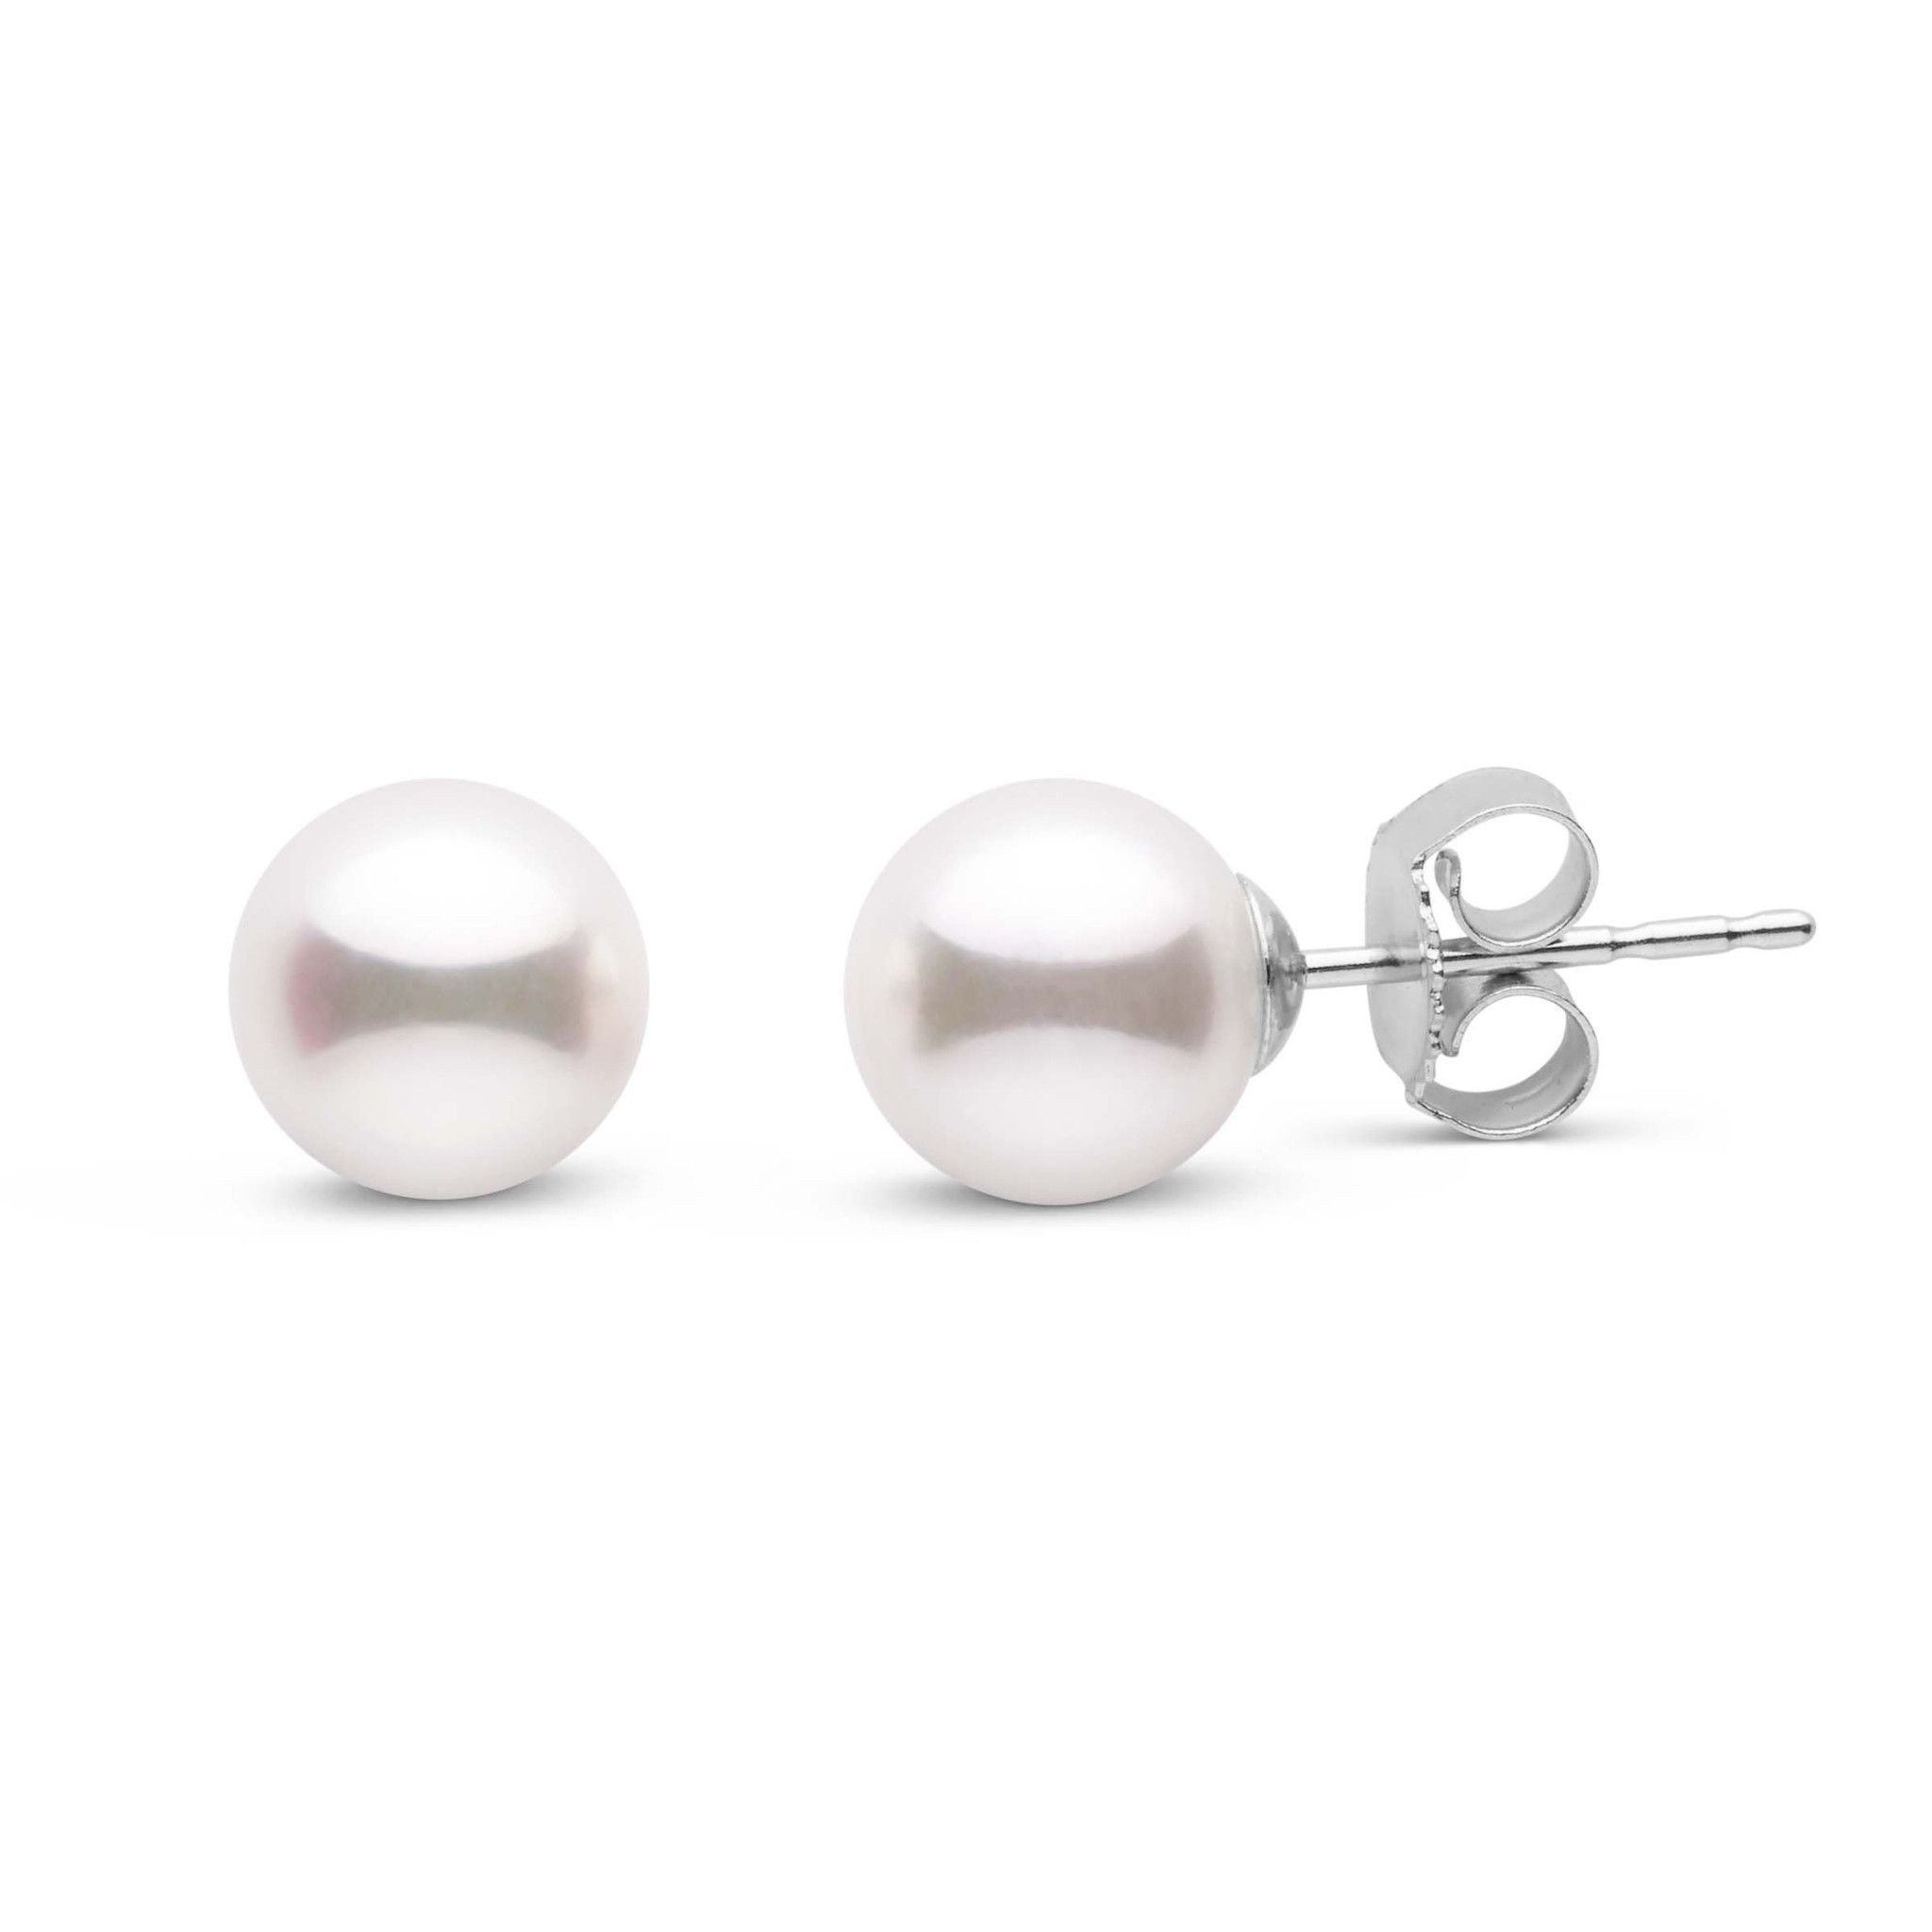 6.5-7.0 mm White Akoya AA+ Pearl Stud Earrings White Gold